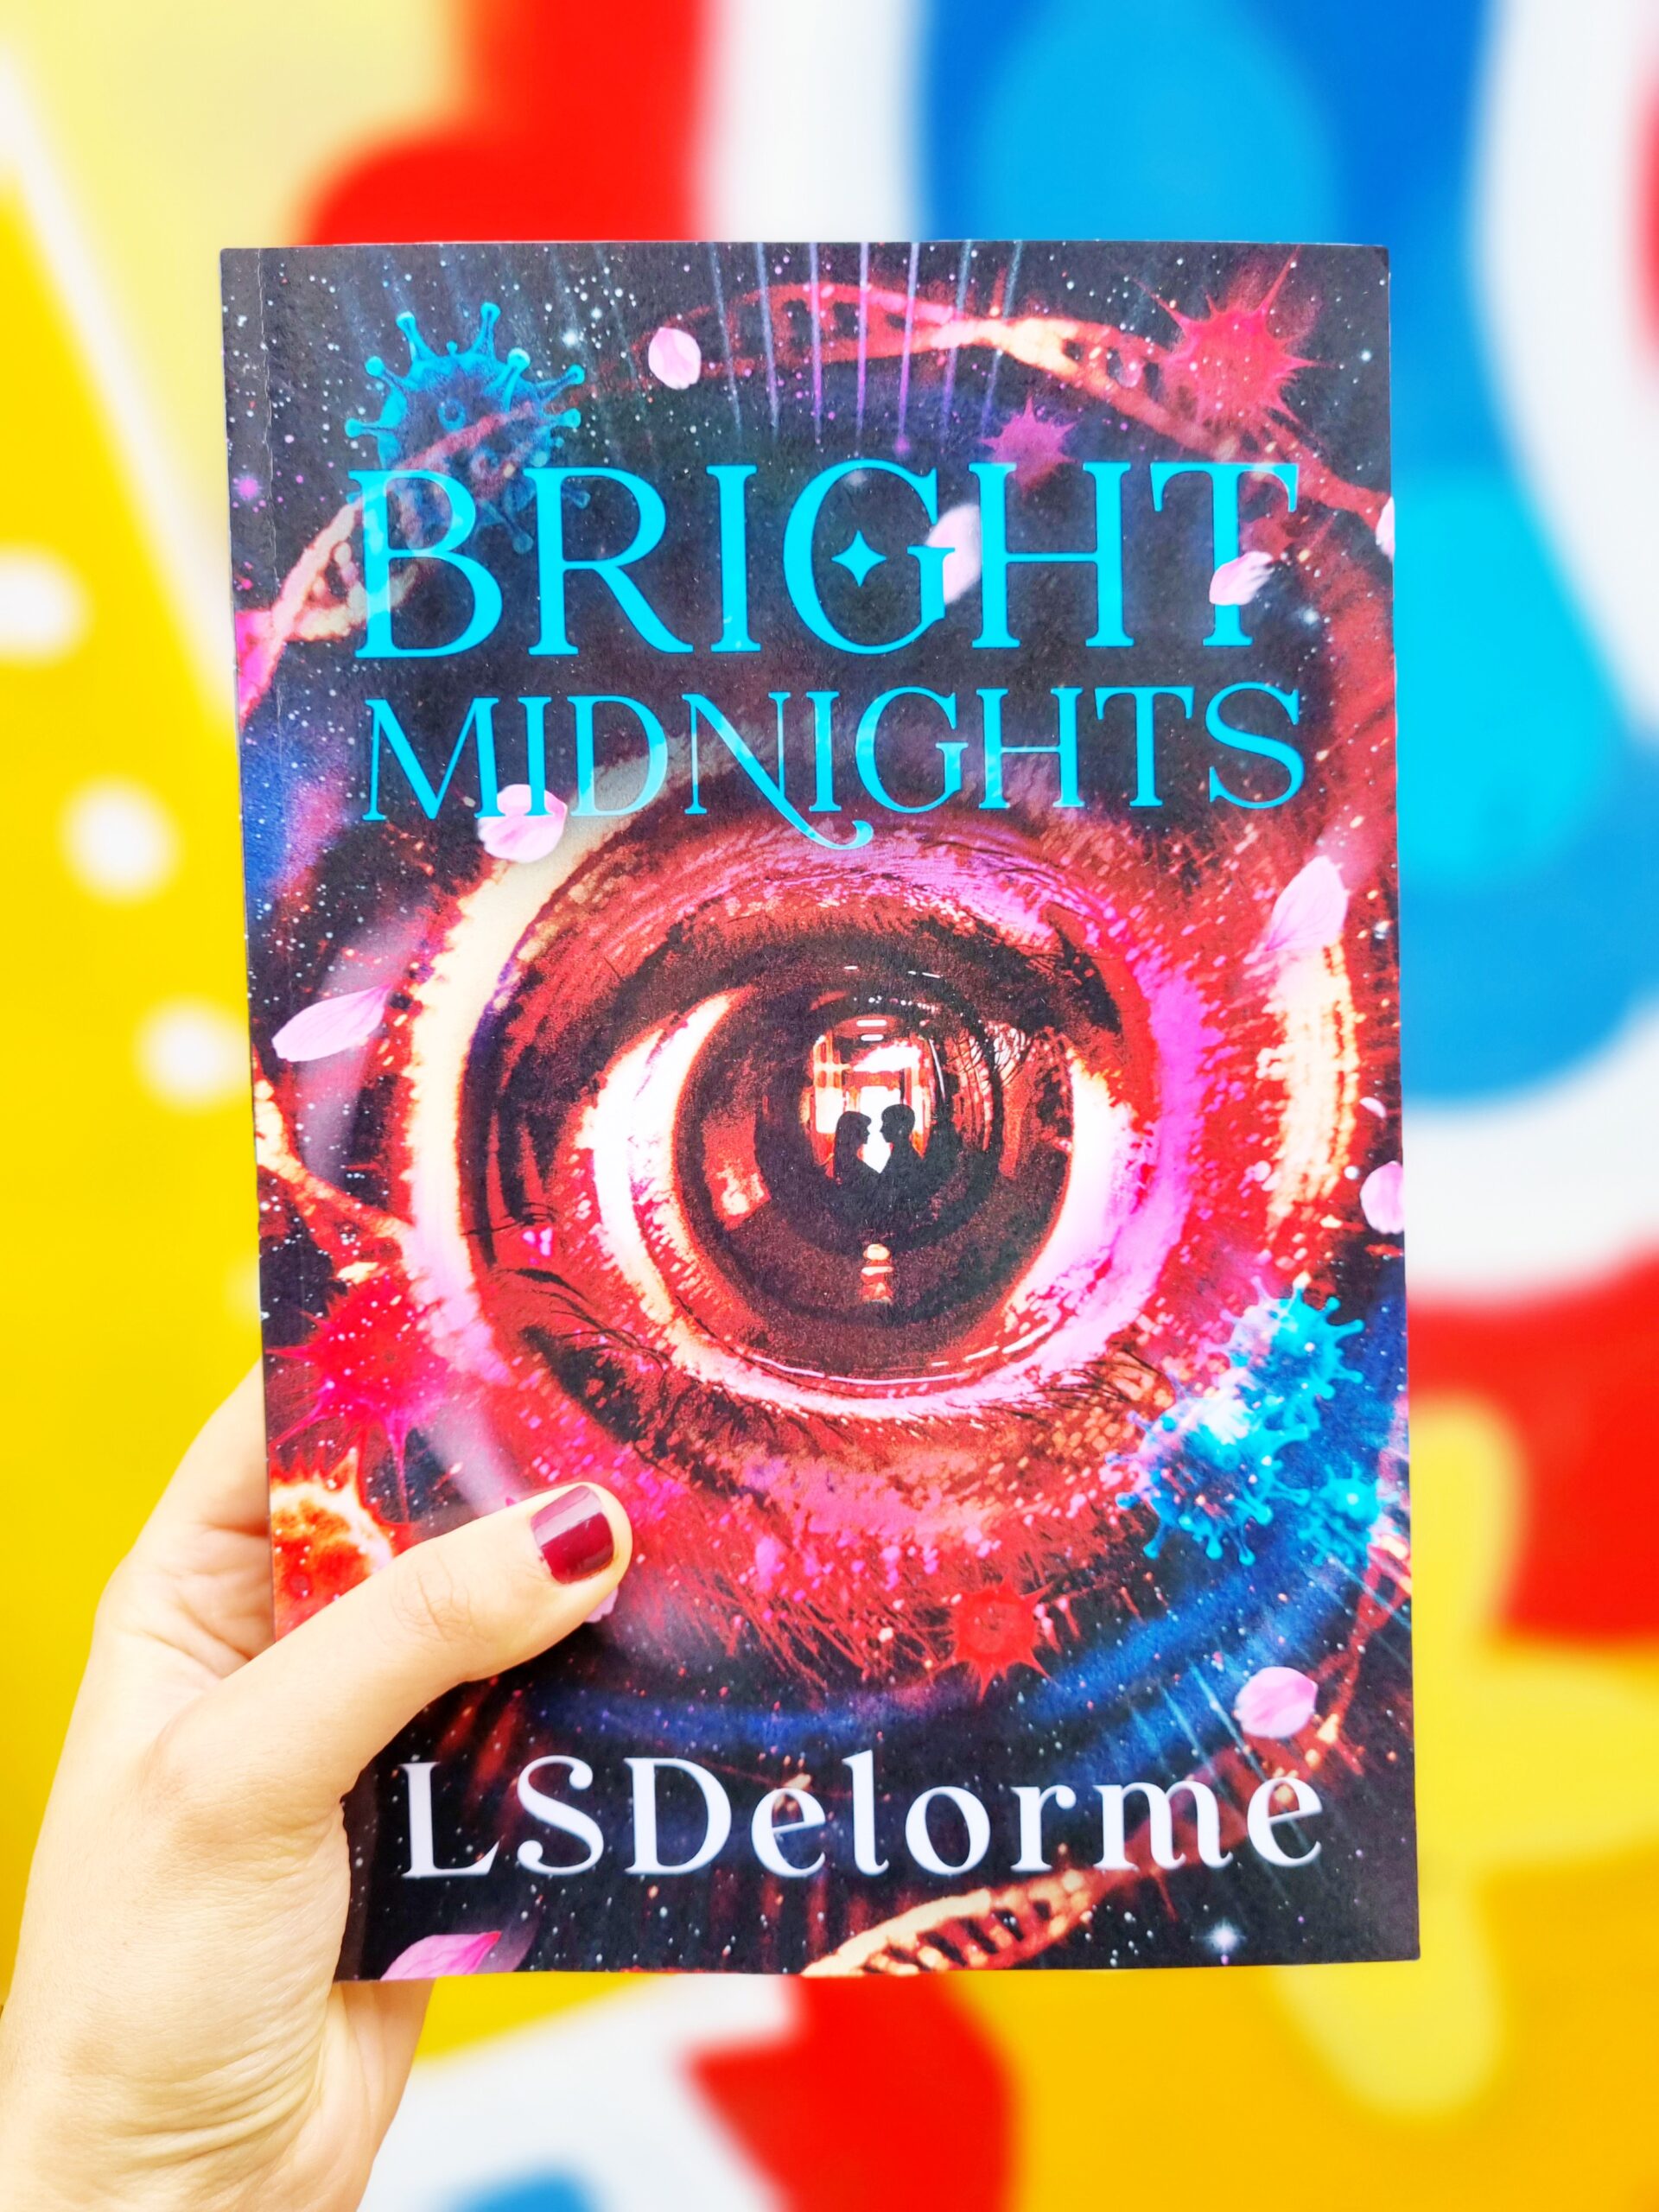 <img src="bright.jpg" alt="bright midnights fantasy novel"/>